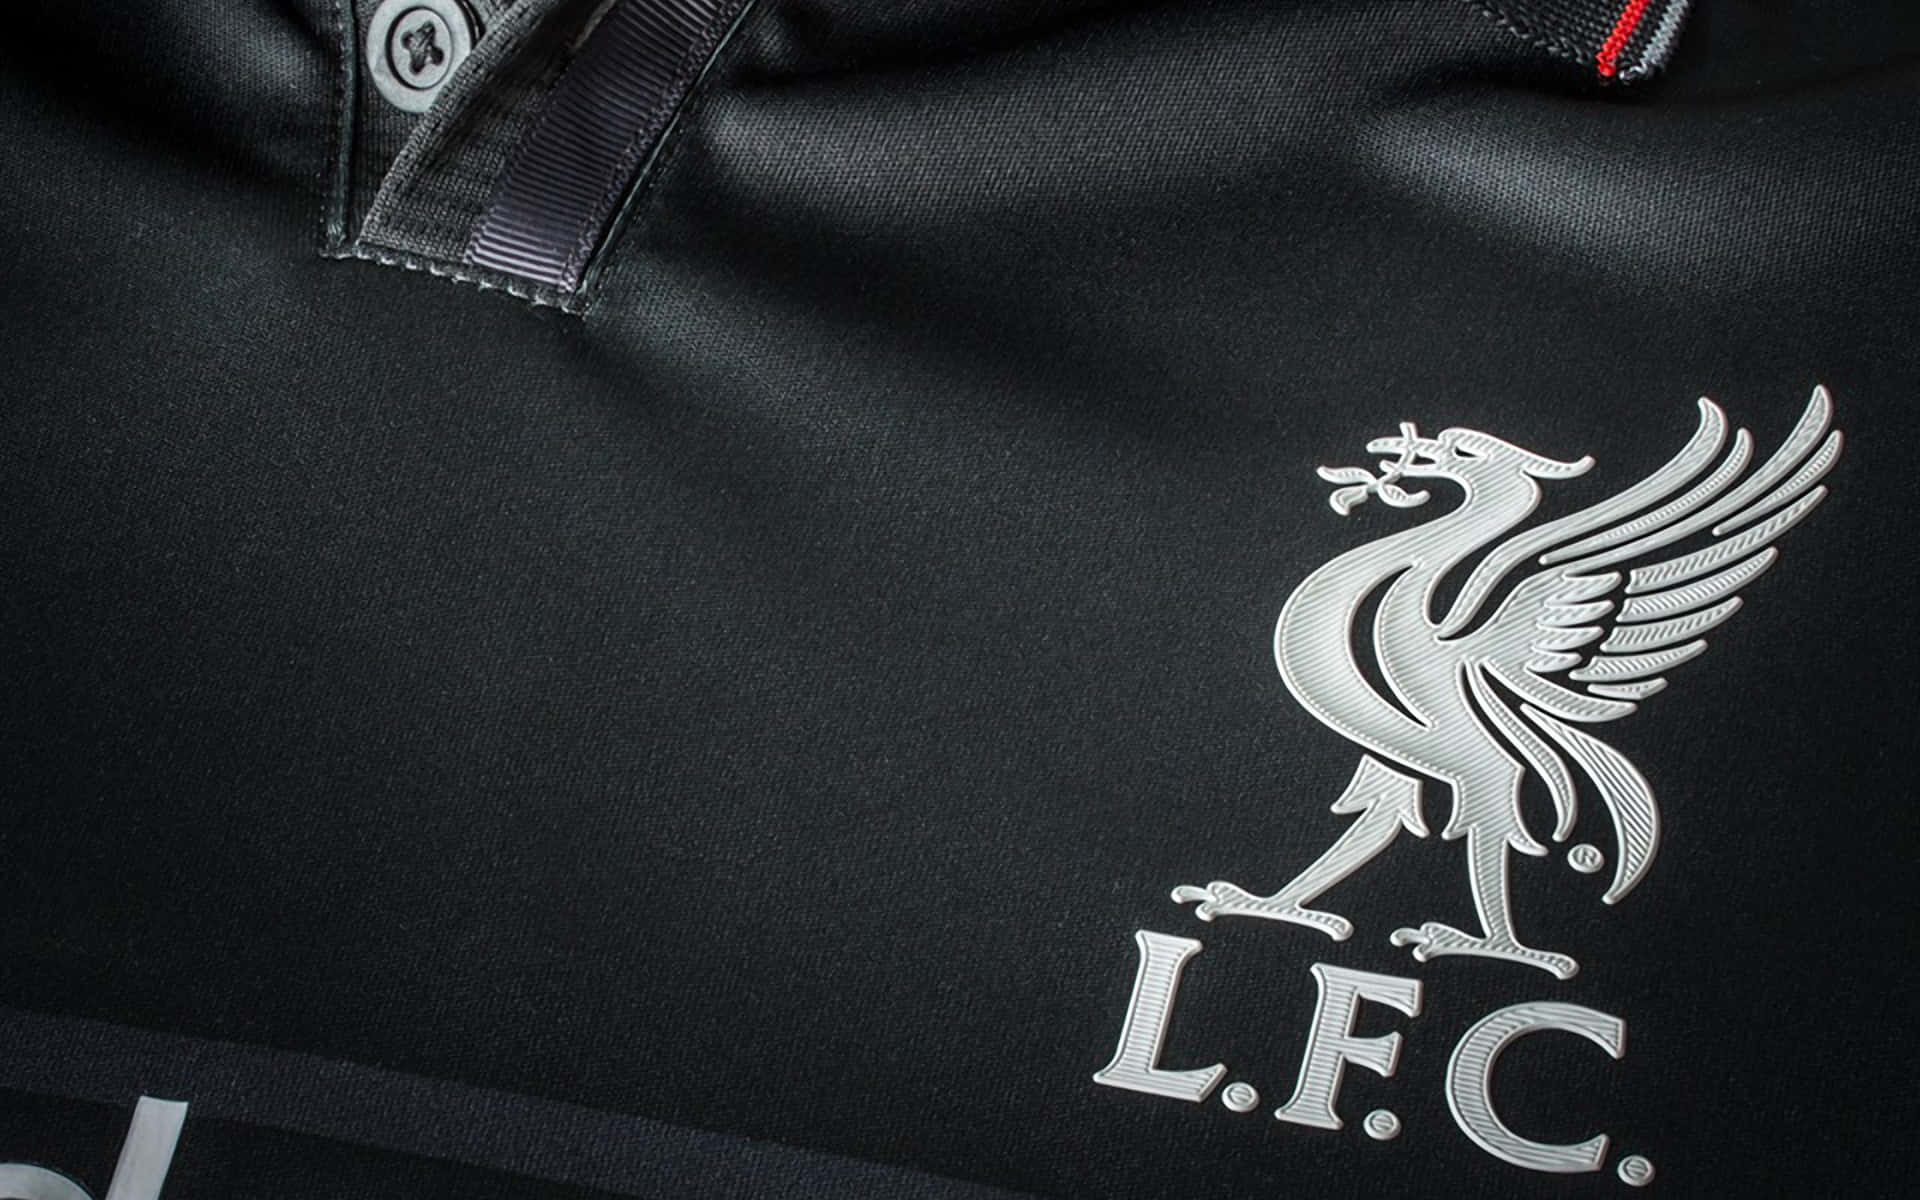 Liverpool Fc Away Shirt Wallpaper